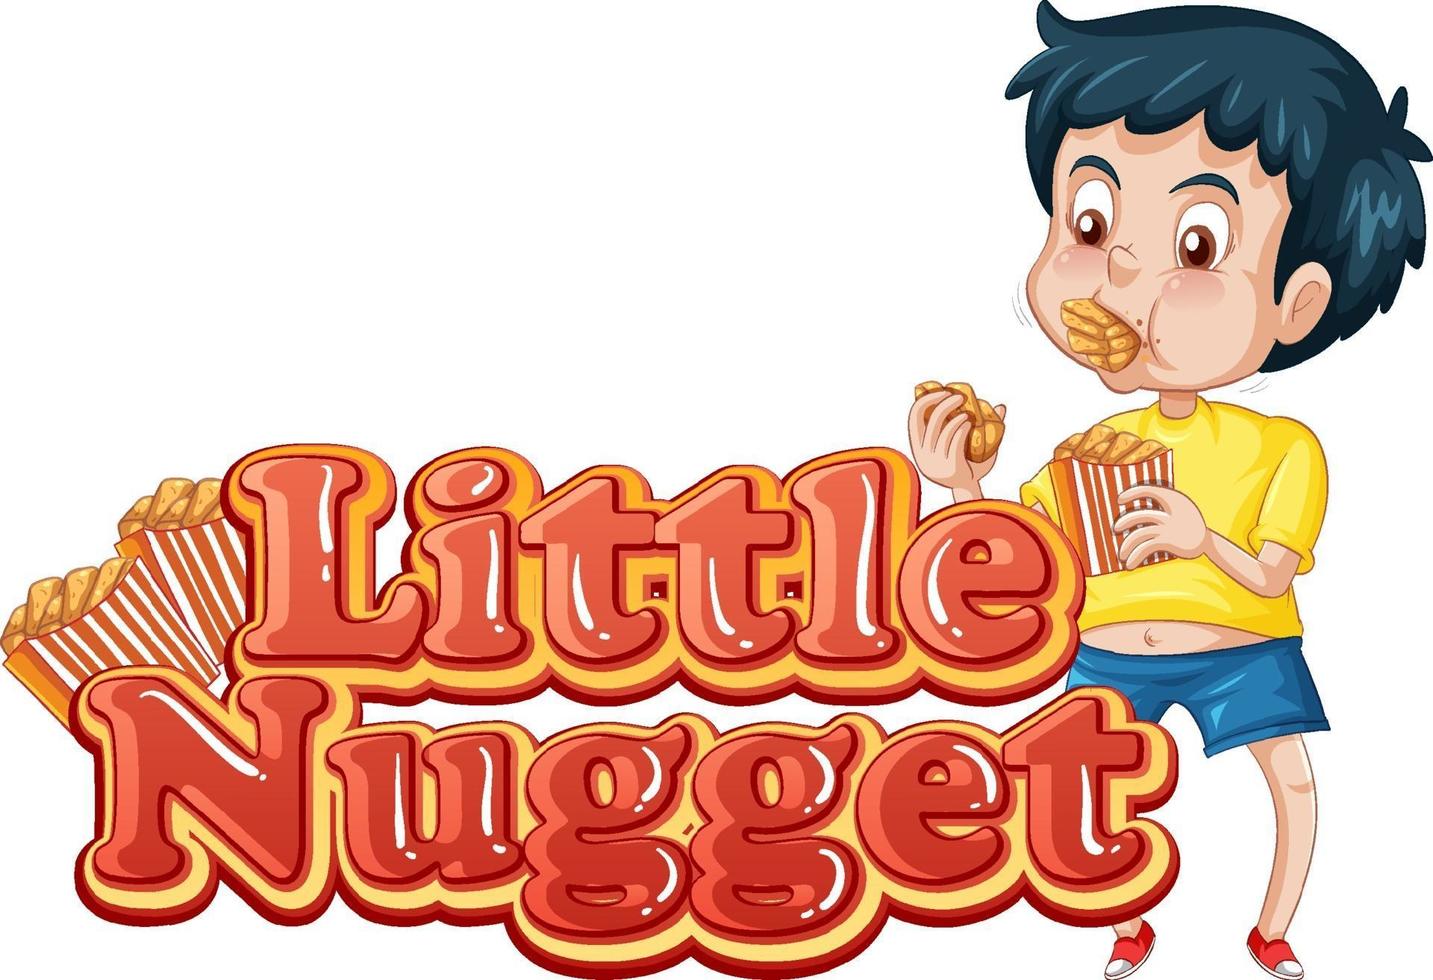 conception de texte de logo de petite pépite avec un garçon mangeant des pépites de poulet vecteur